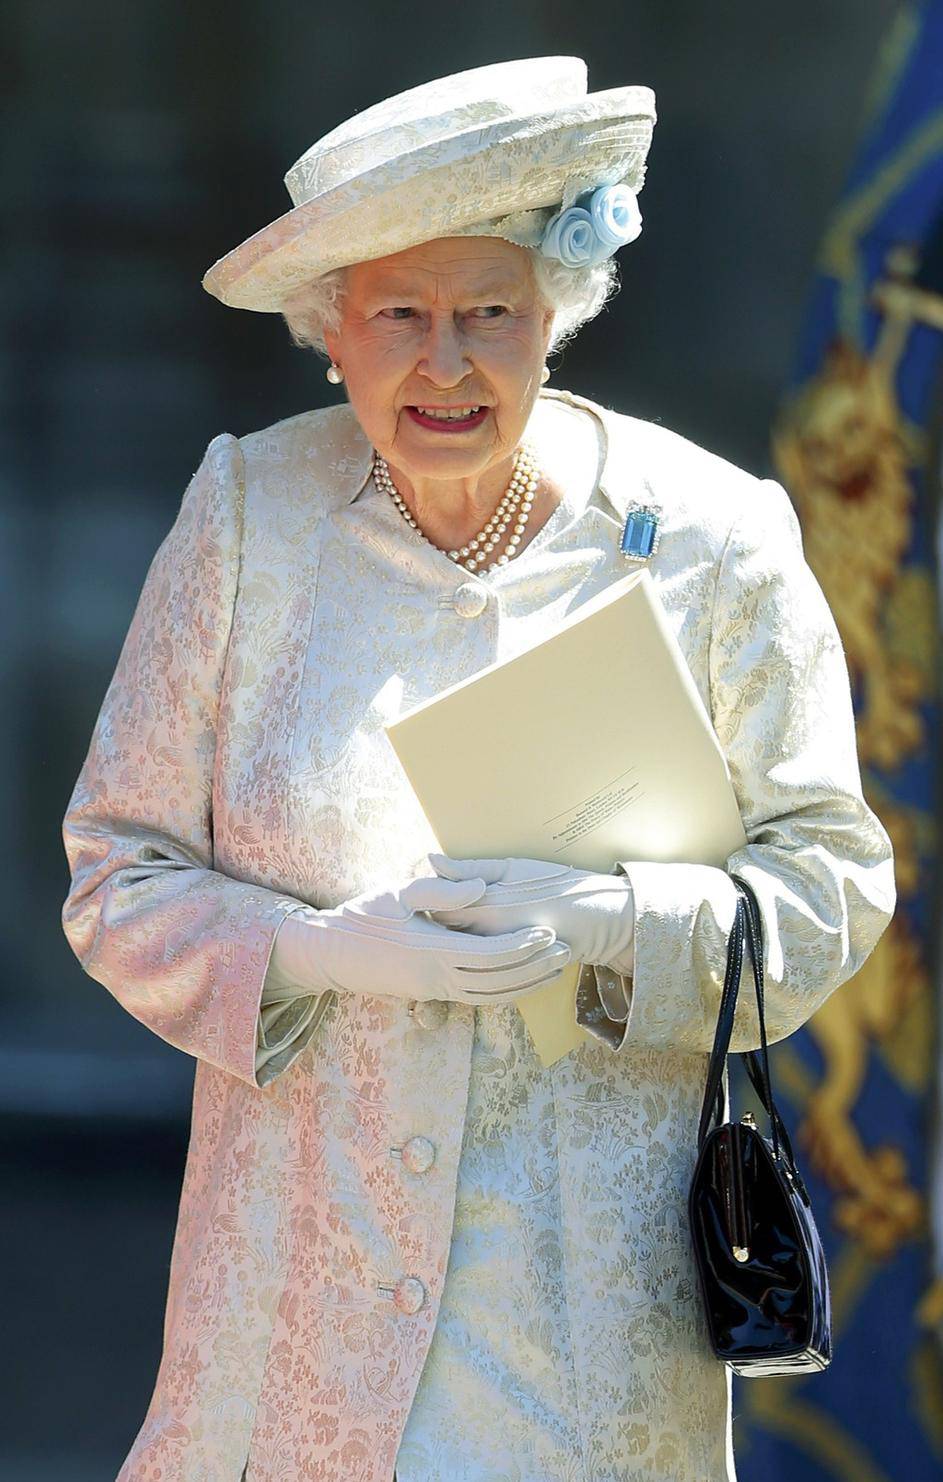 Britanija izdala komemorativnu kovanicu u čast grupe Queen...